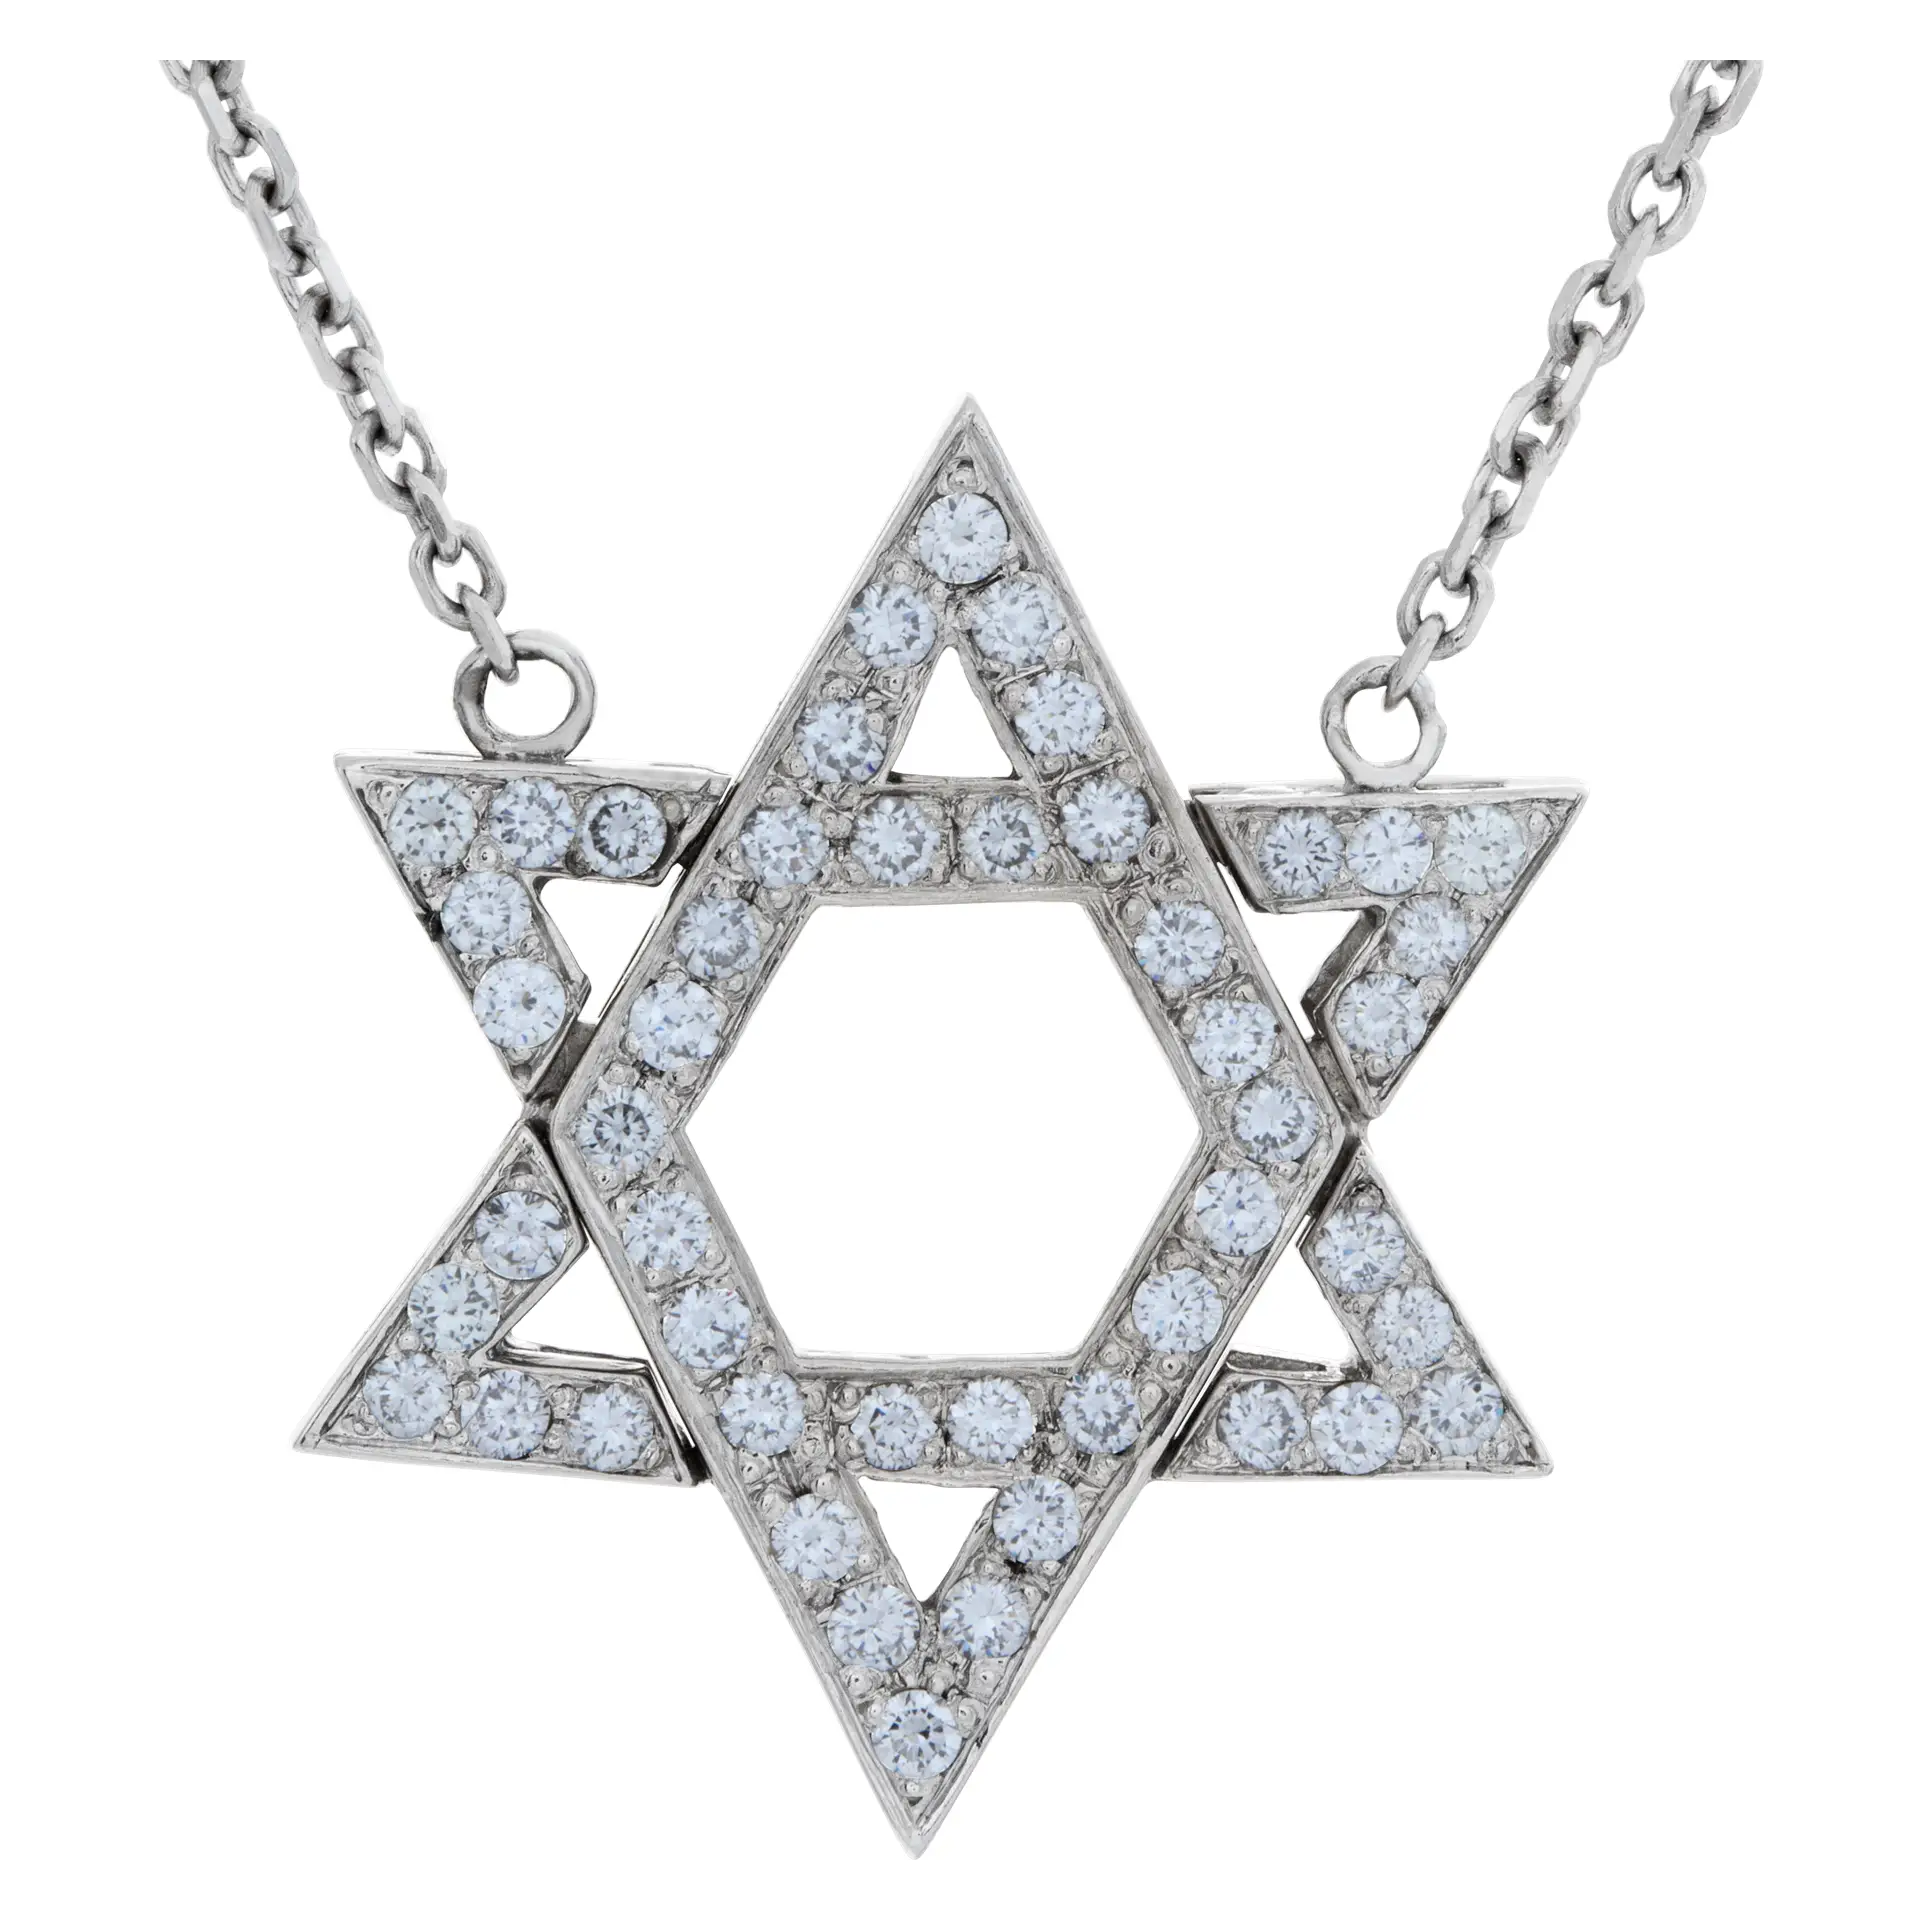 Star of David diamond necklace in 14k white gold